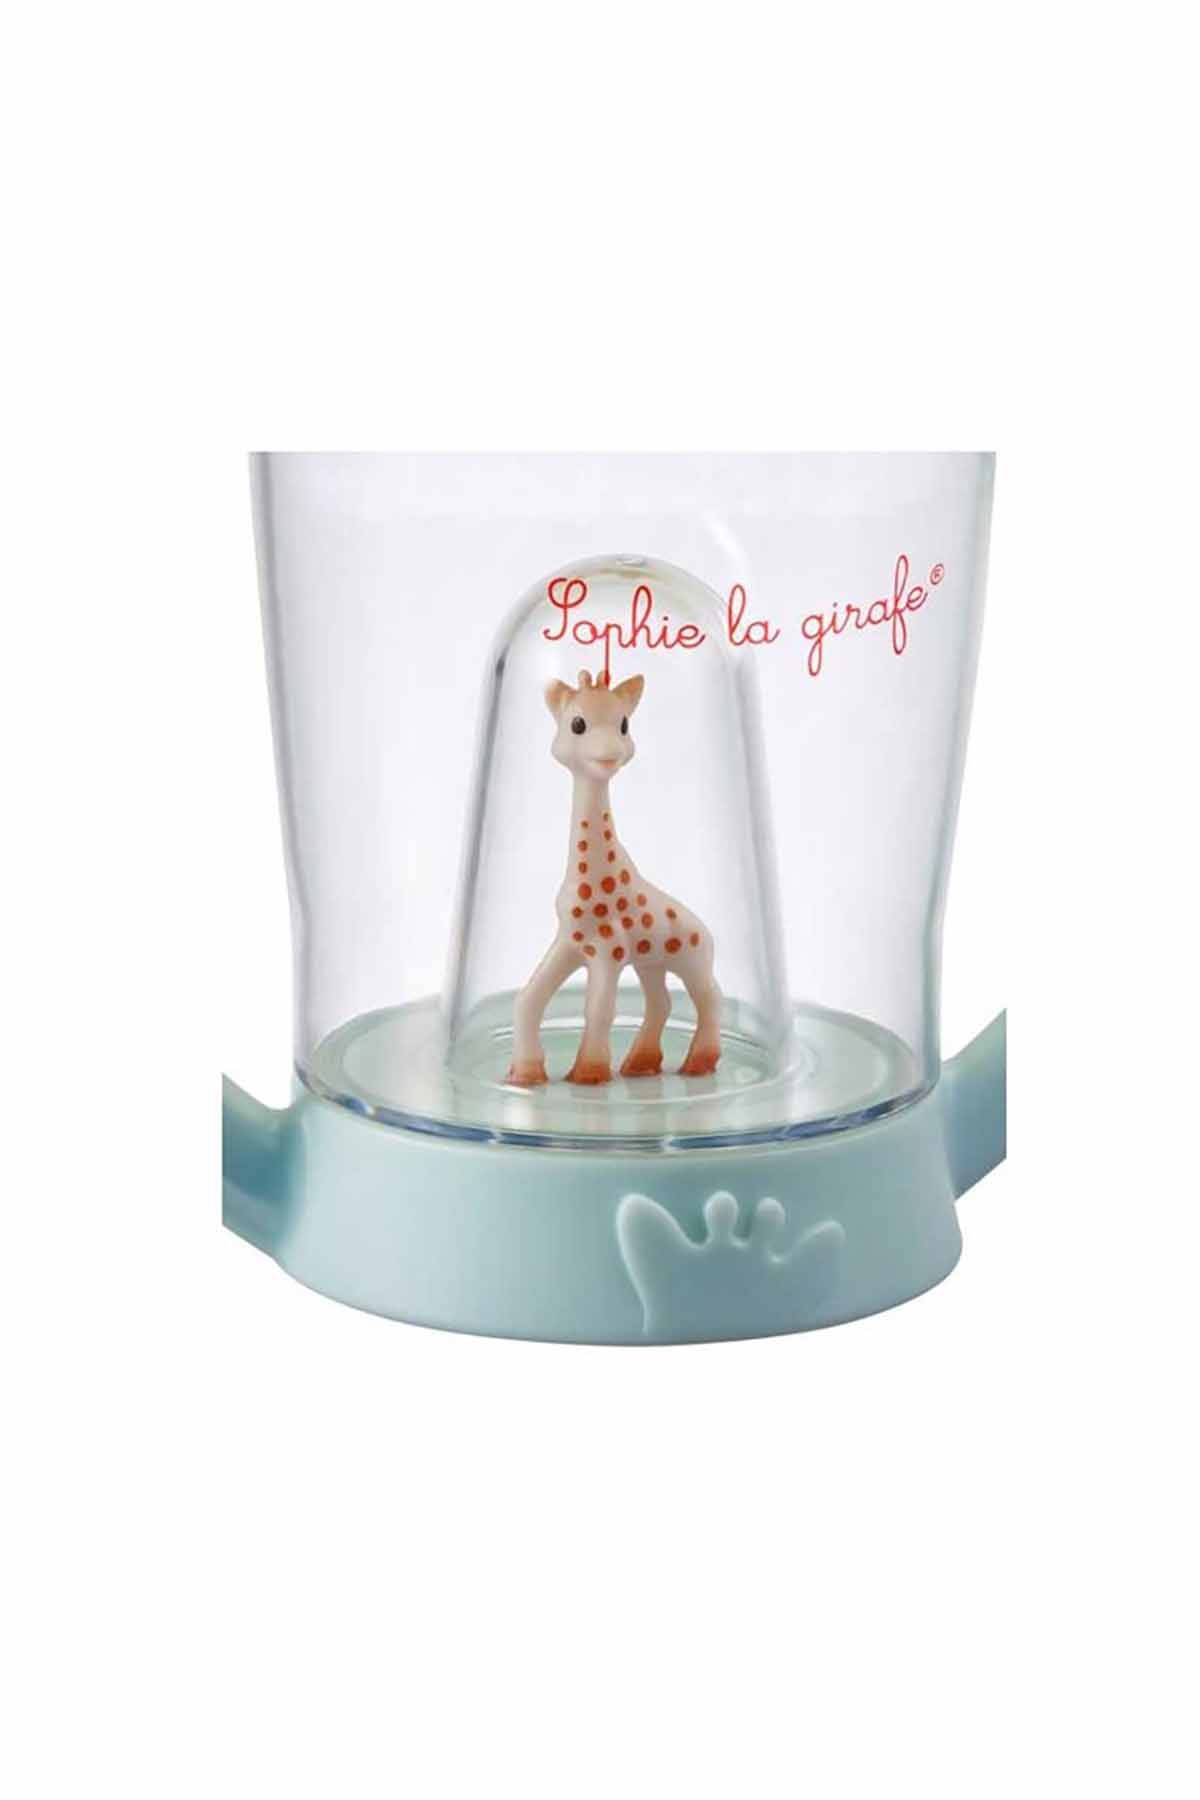 Sophie La Girafe Mascot Alıştırma Bardağı Suluk